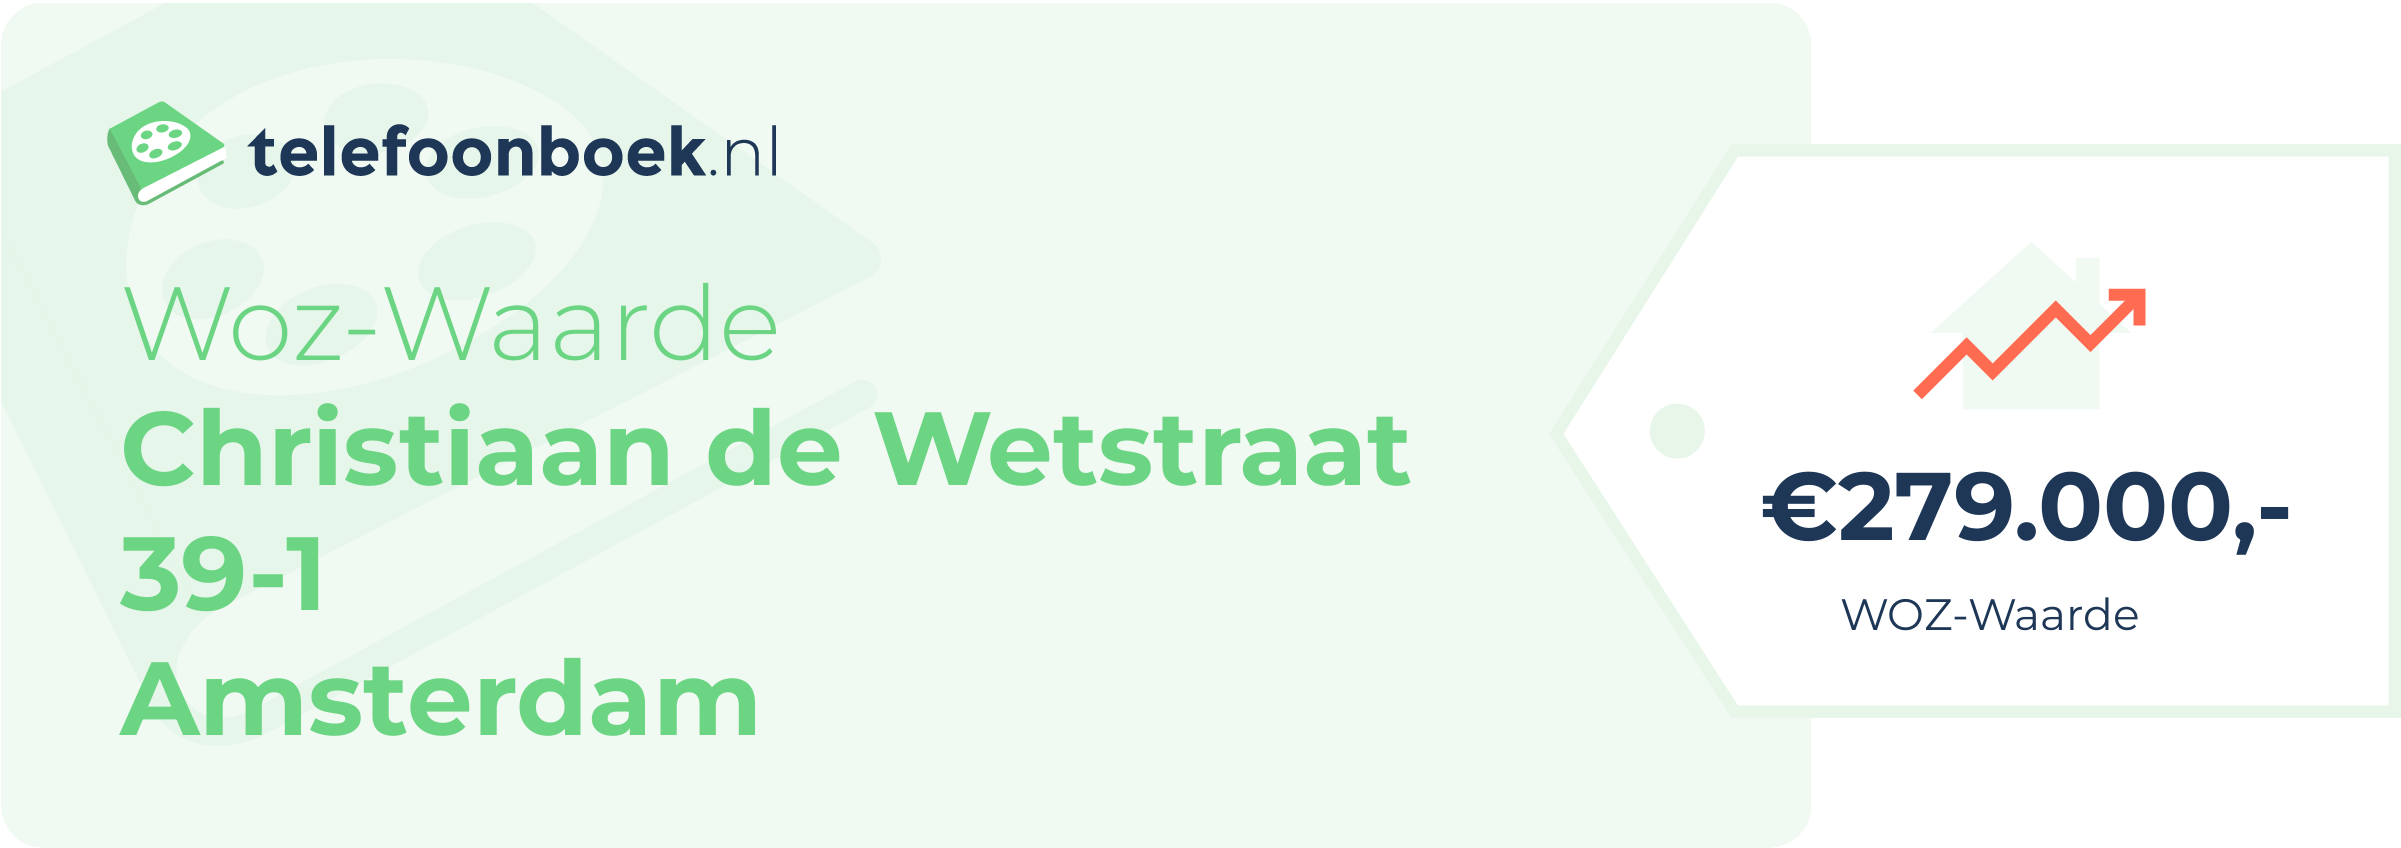 WOZ-waarde Christiaan De Wetstraat 39-1 Amsterdam